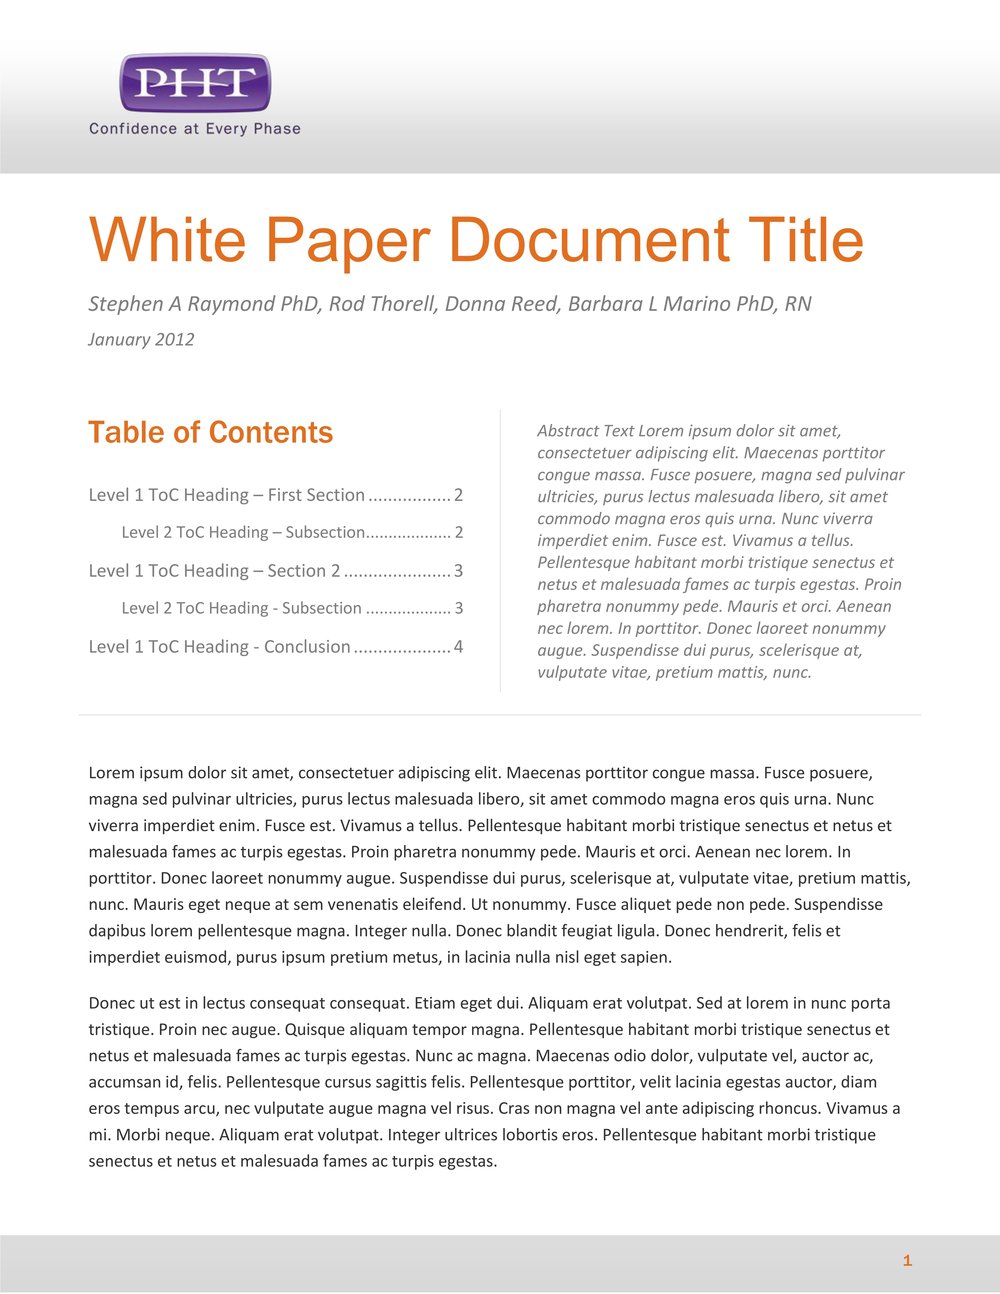 White Paper Sample